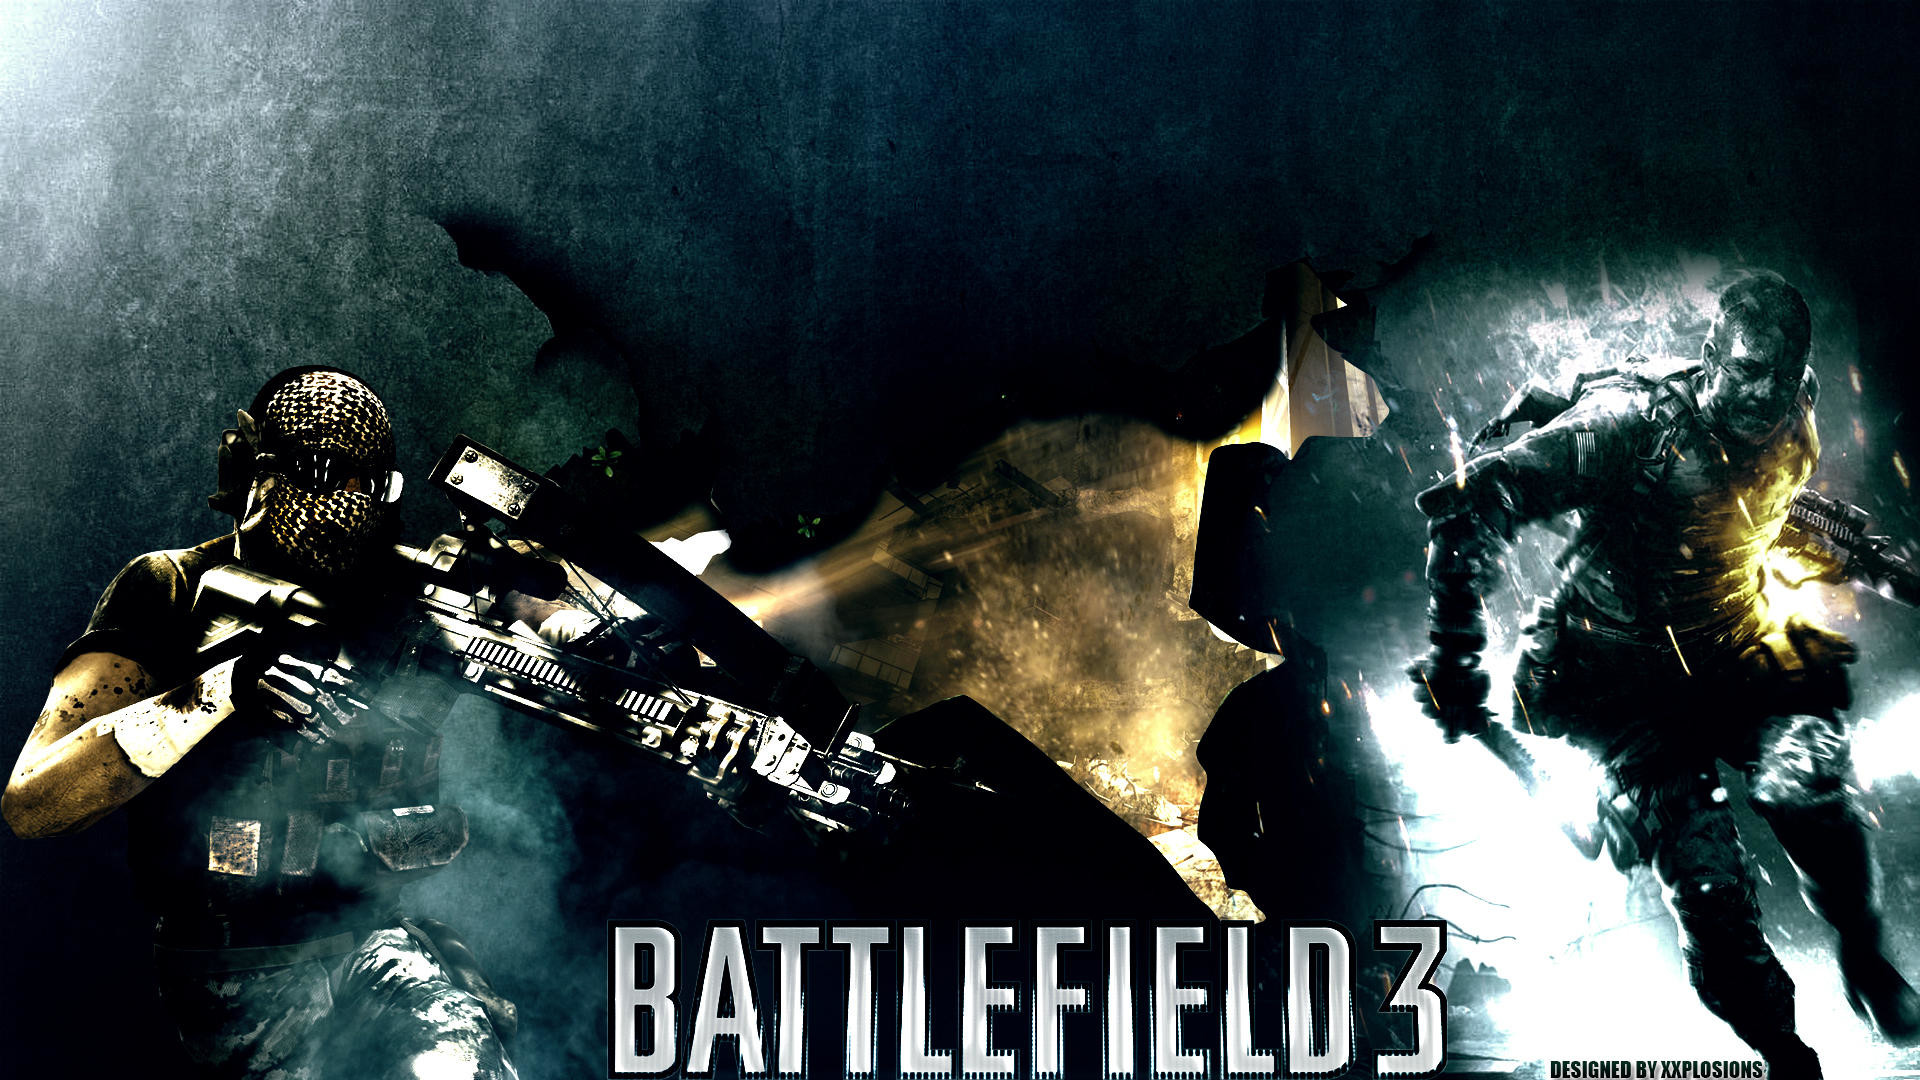 1920x1080 ... Only In Battlefield 3 | BF3 Desktop Wallpaper by Xxplosions